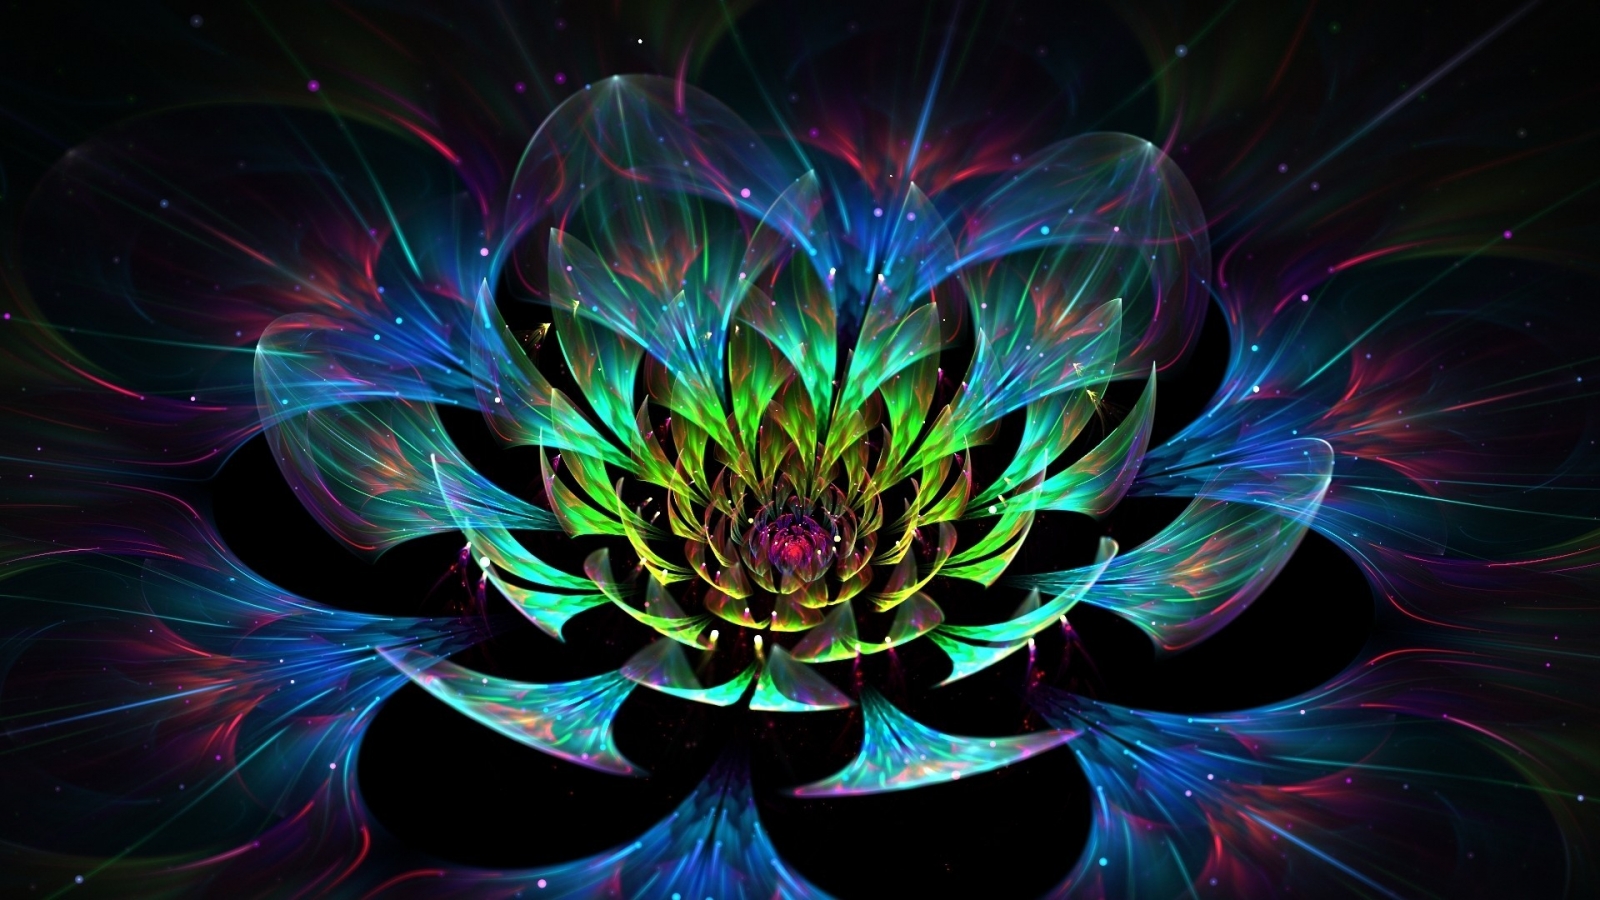 3D Lotus Flower for 1600 x 900 HDTV resolution